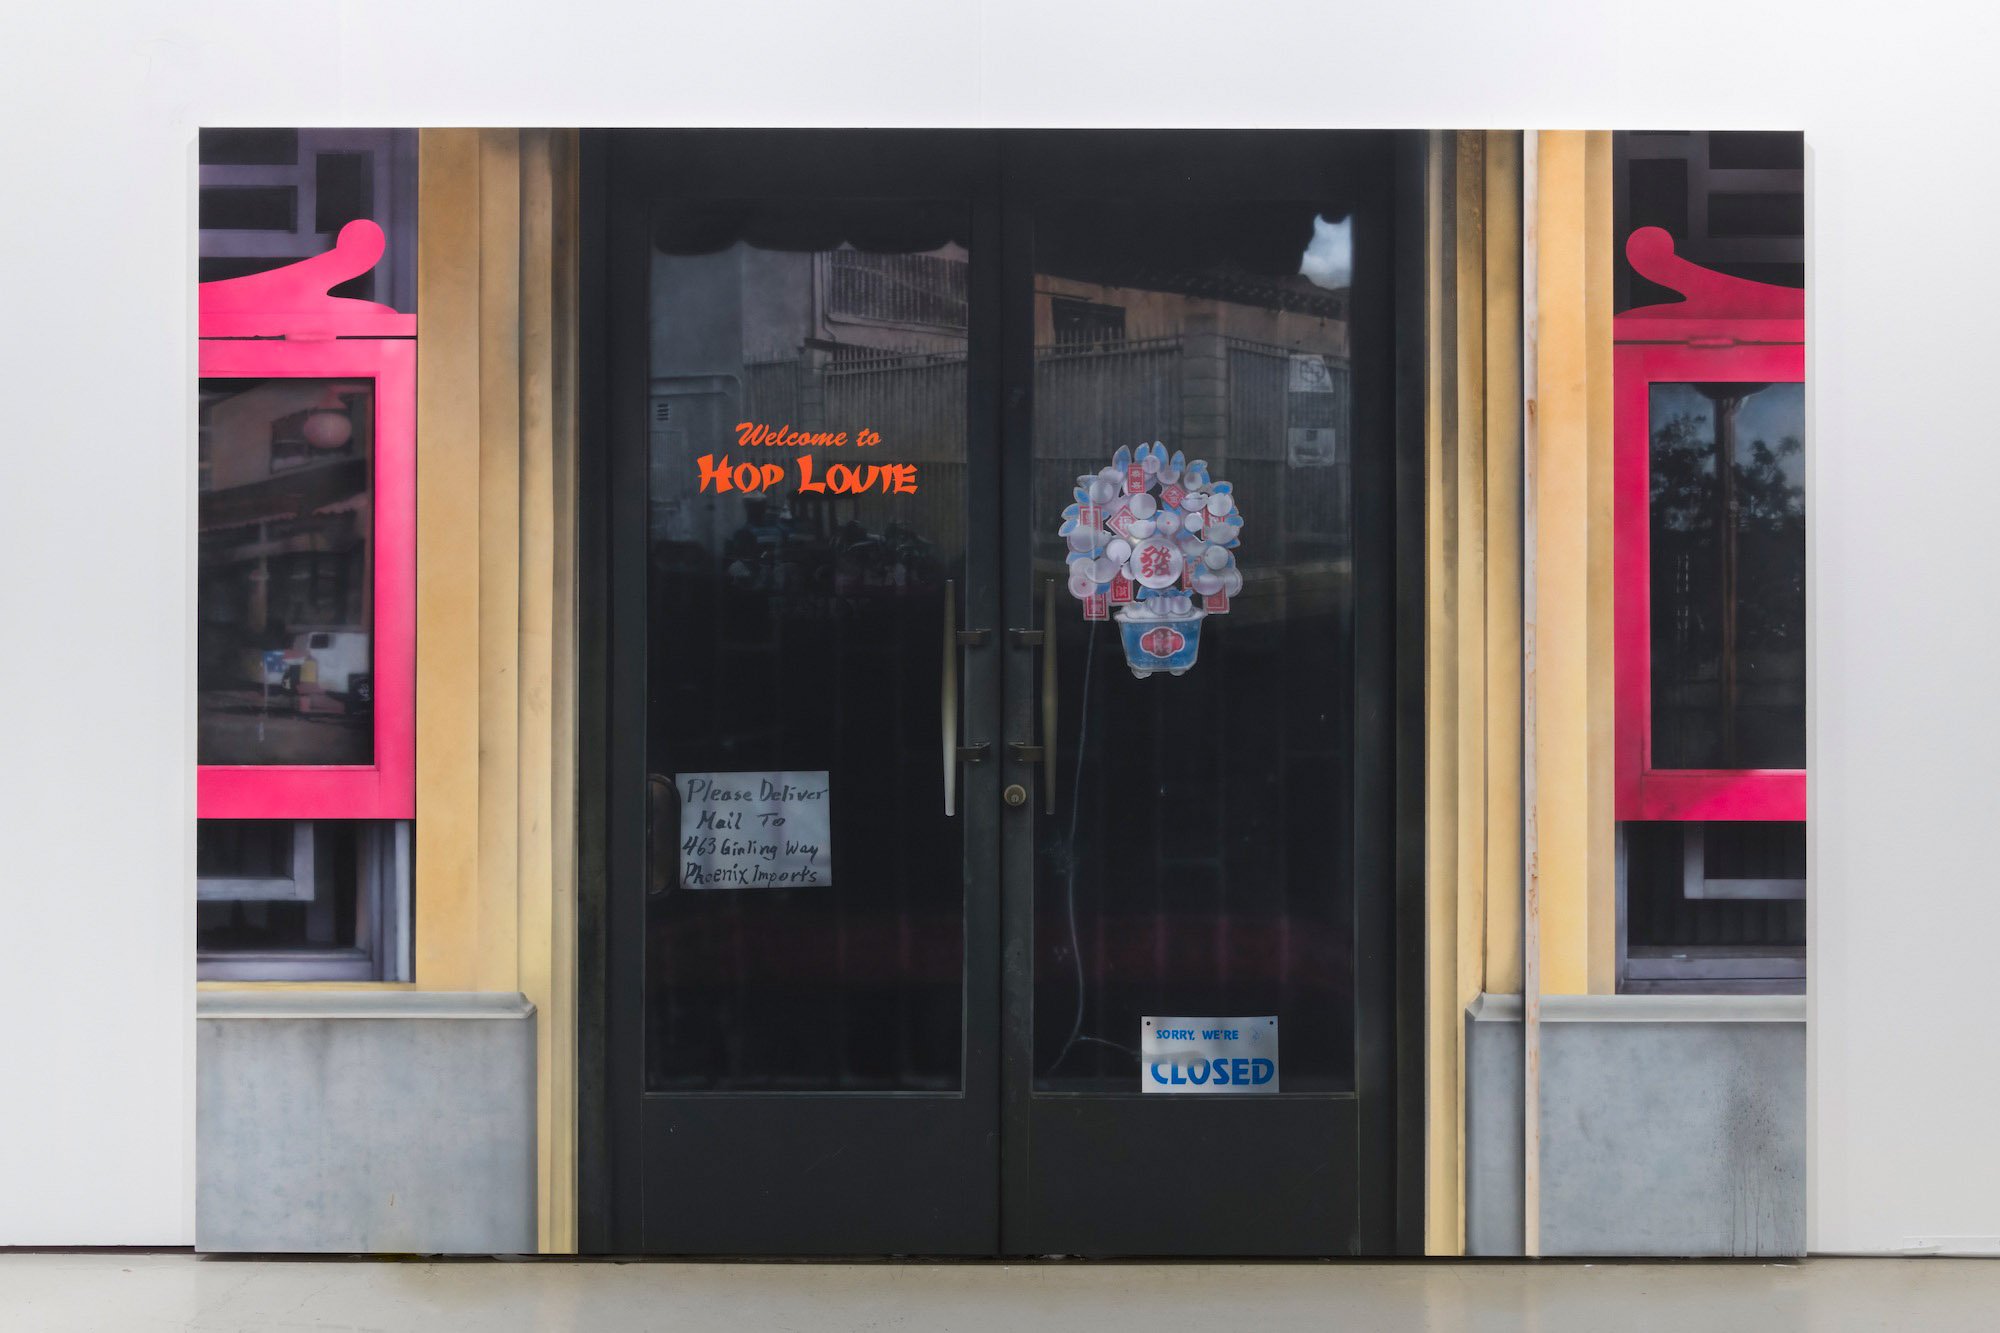   Hop Louie Doors,  2018. Acrylic on canvas. 84 x 120 inches 